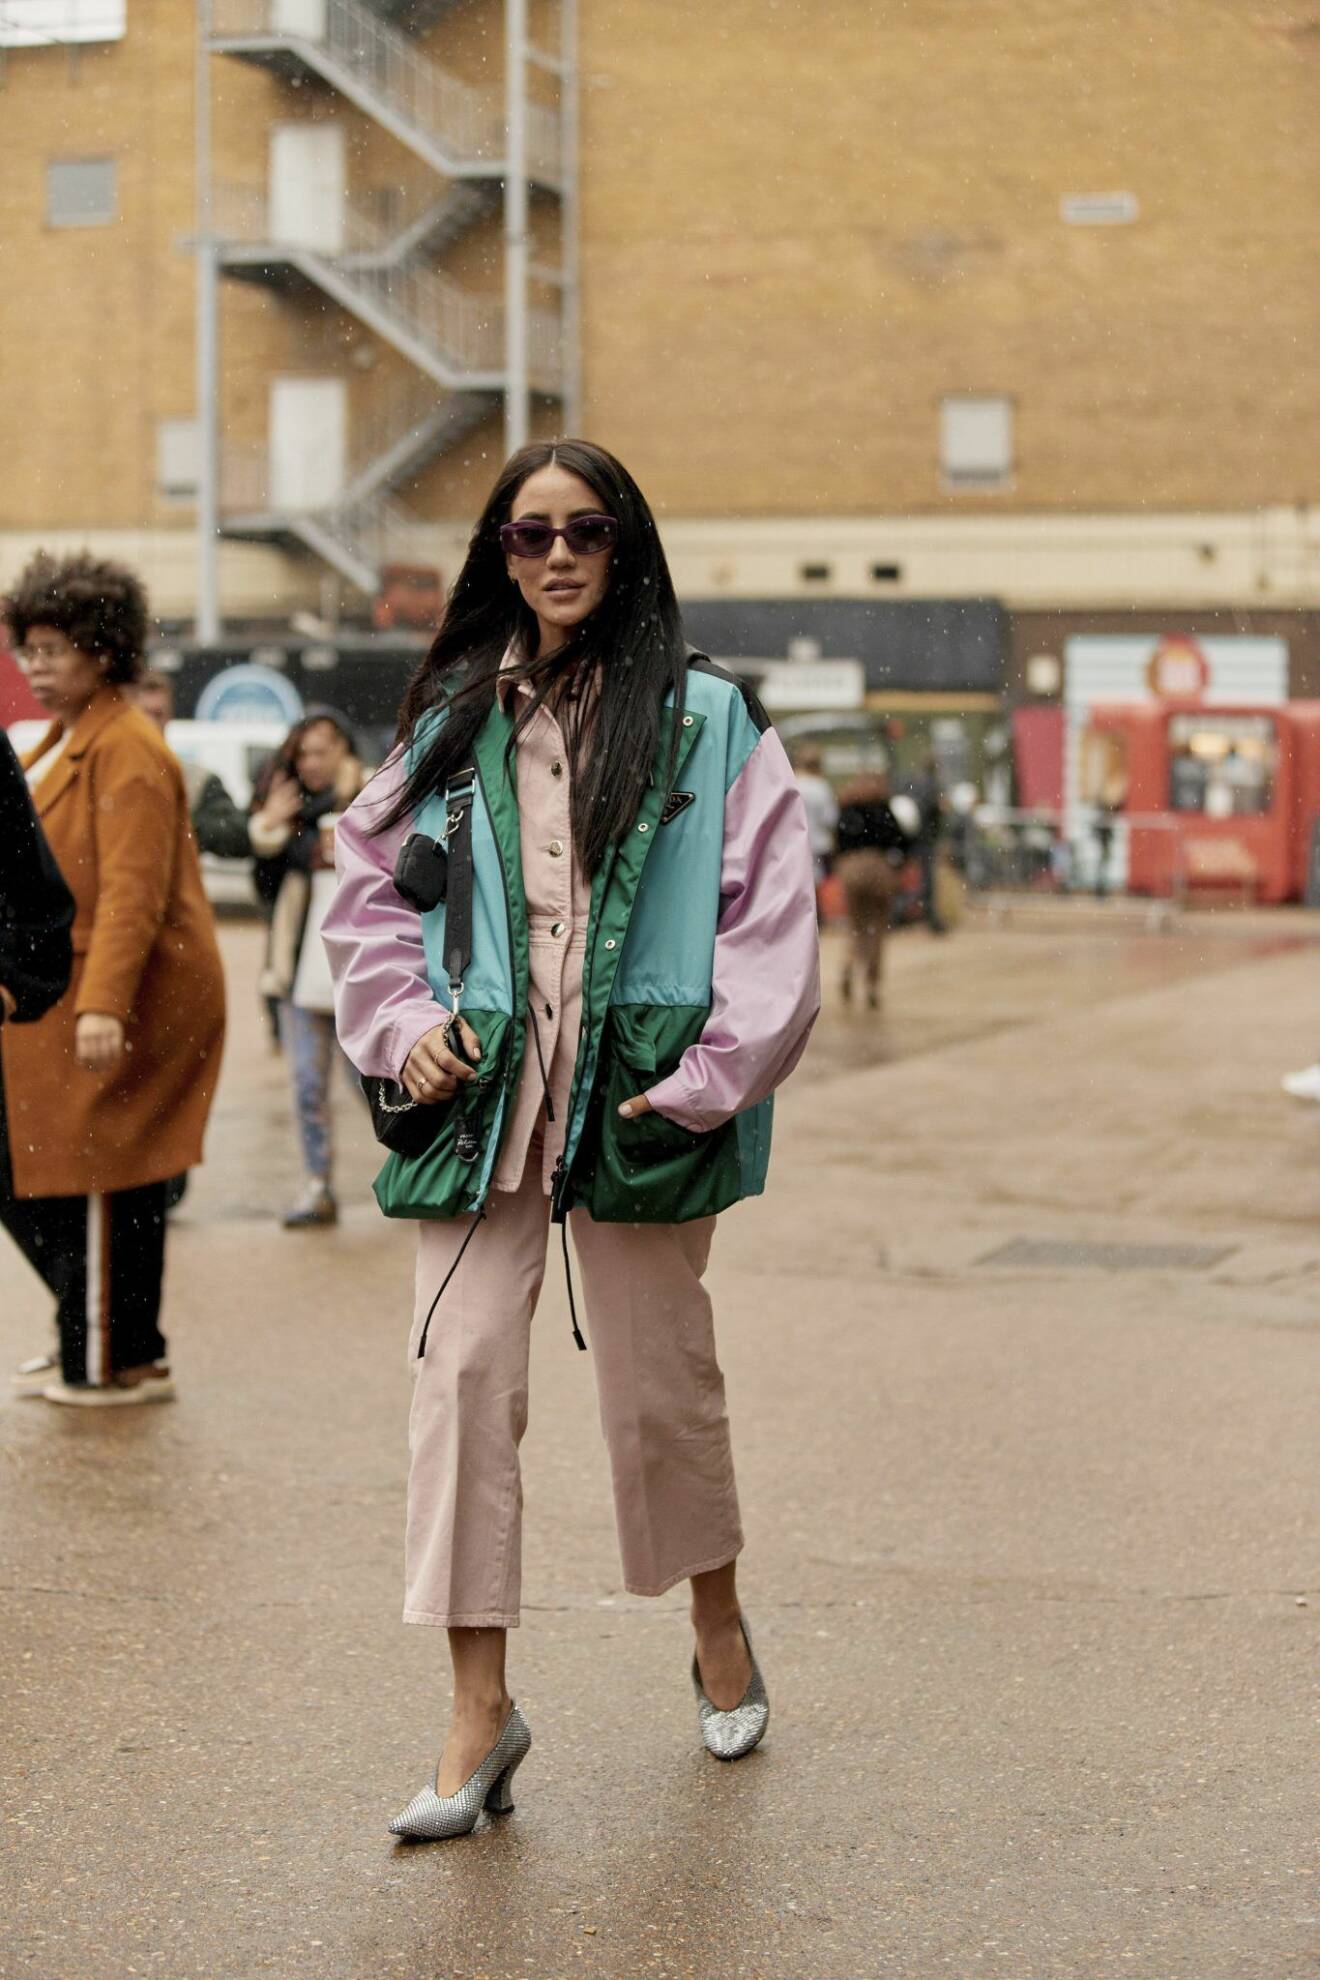 Streetstyle från London Fashion week, Tamara Kalinic i rosa look.